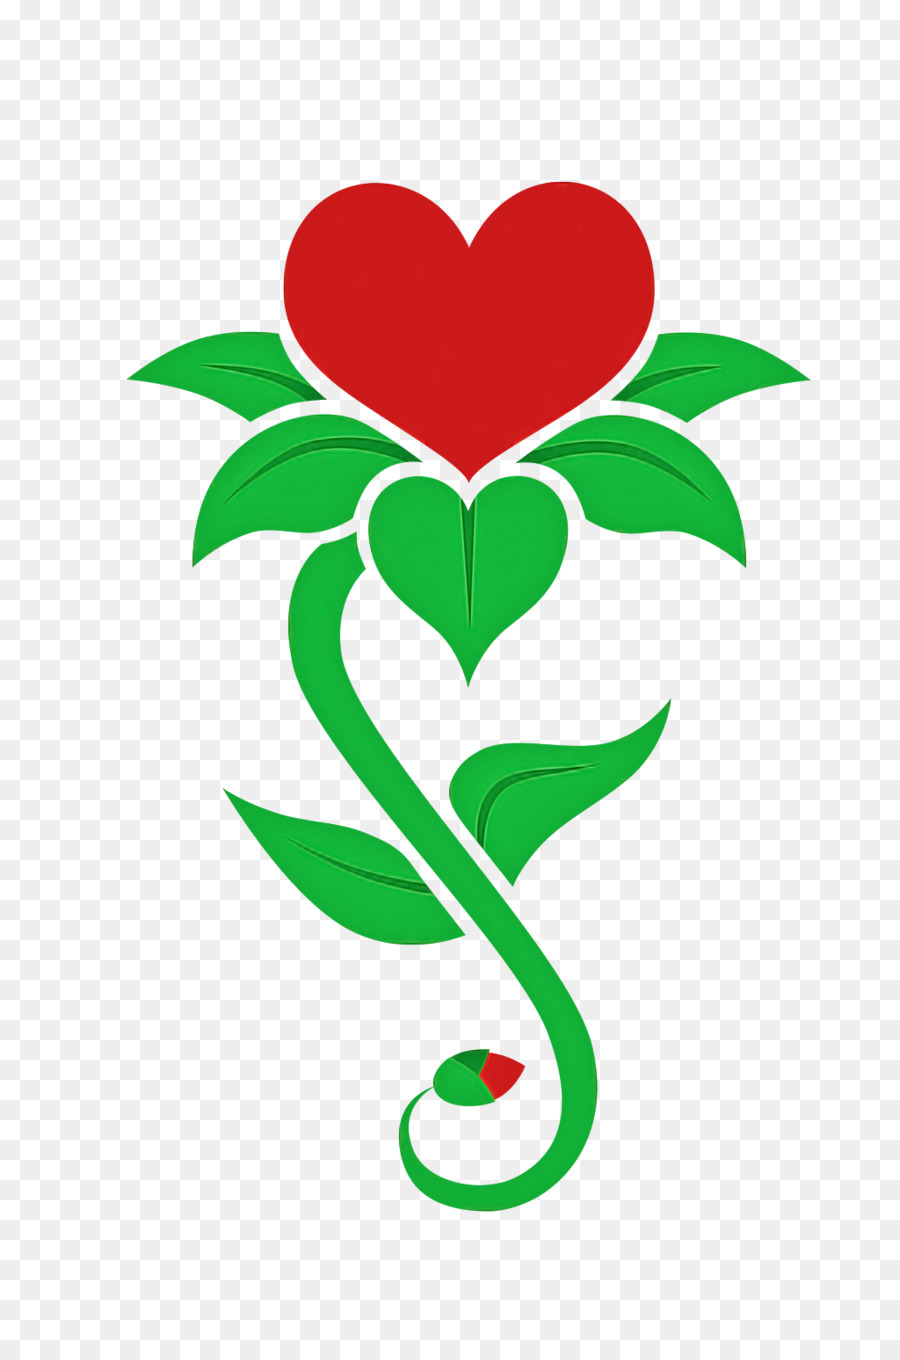 cuore verde del fiore della pianta della foglia - 